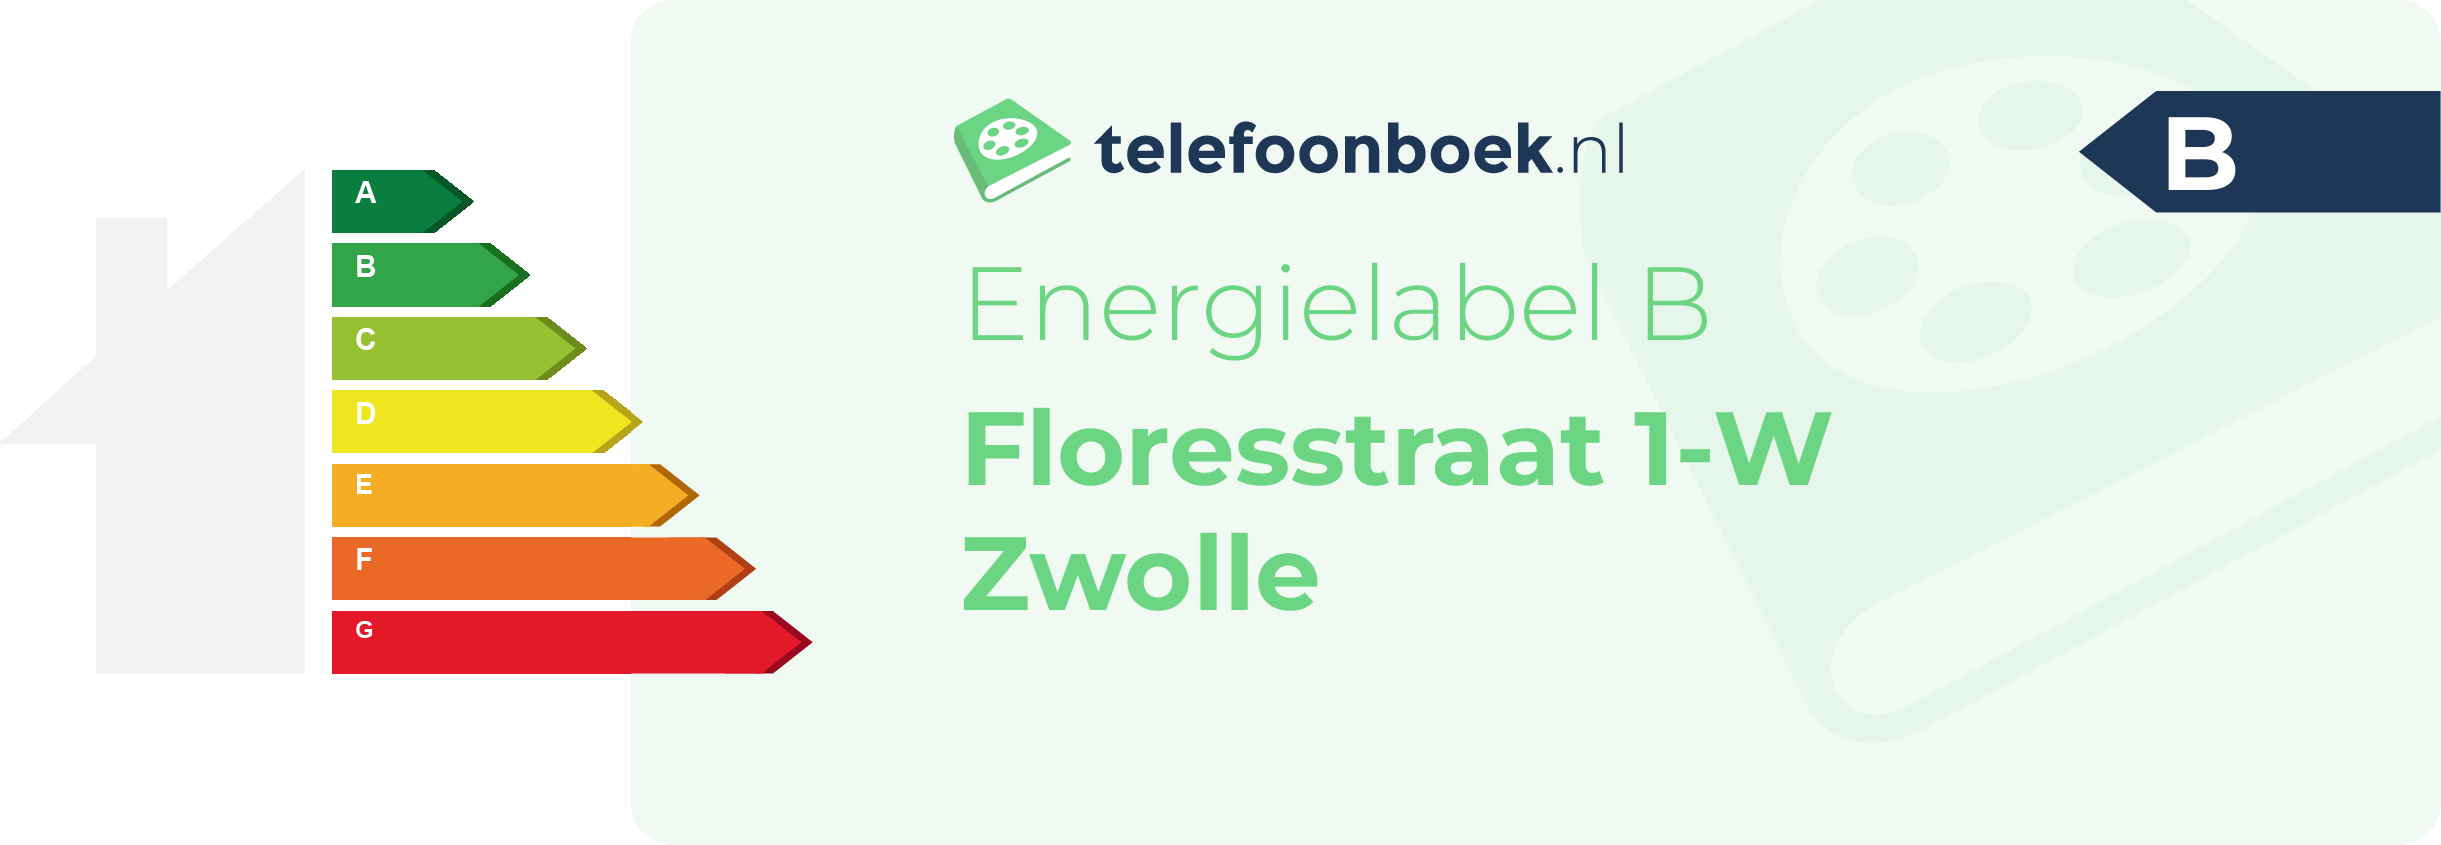 Energielabel Floresstraat 1-W Zwolle